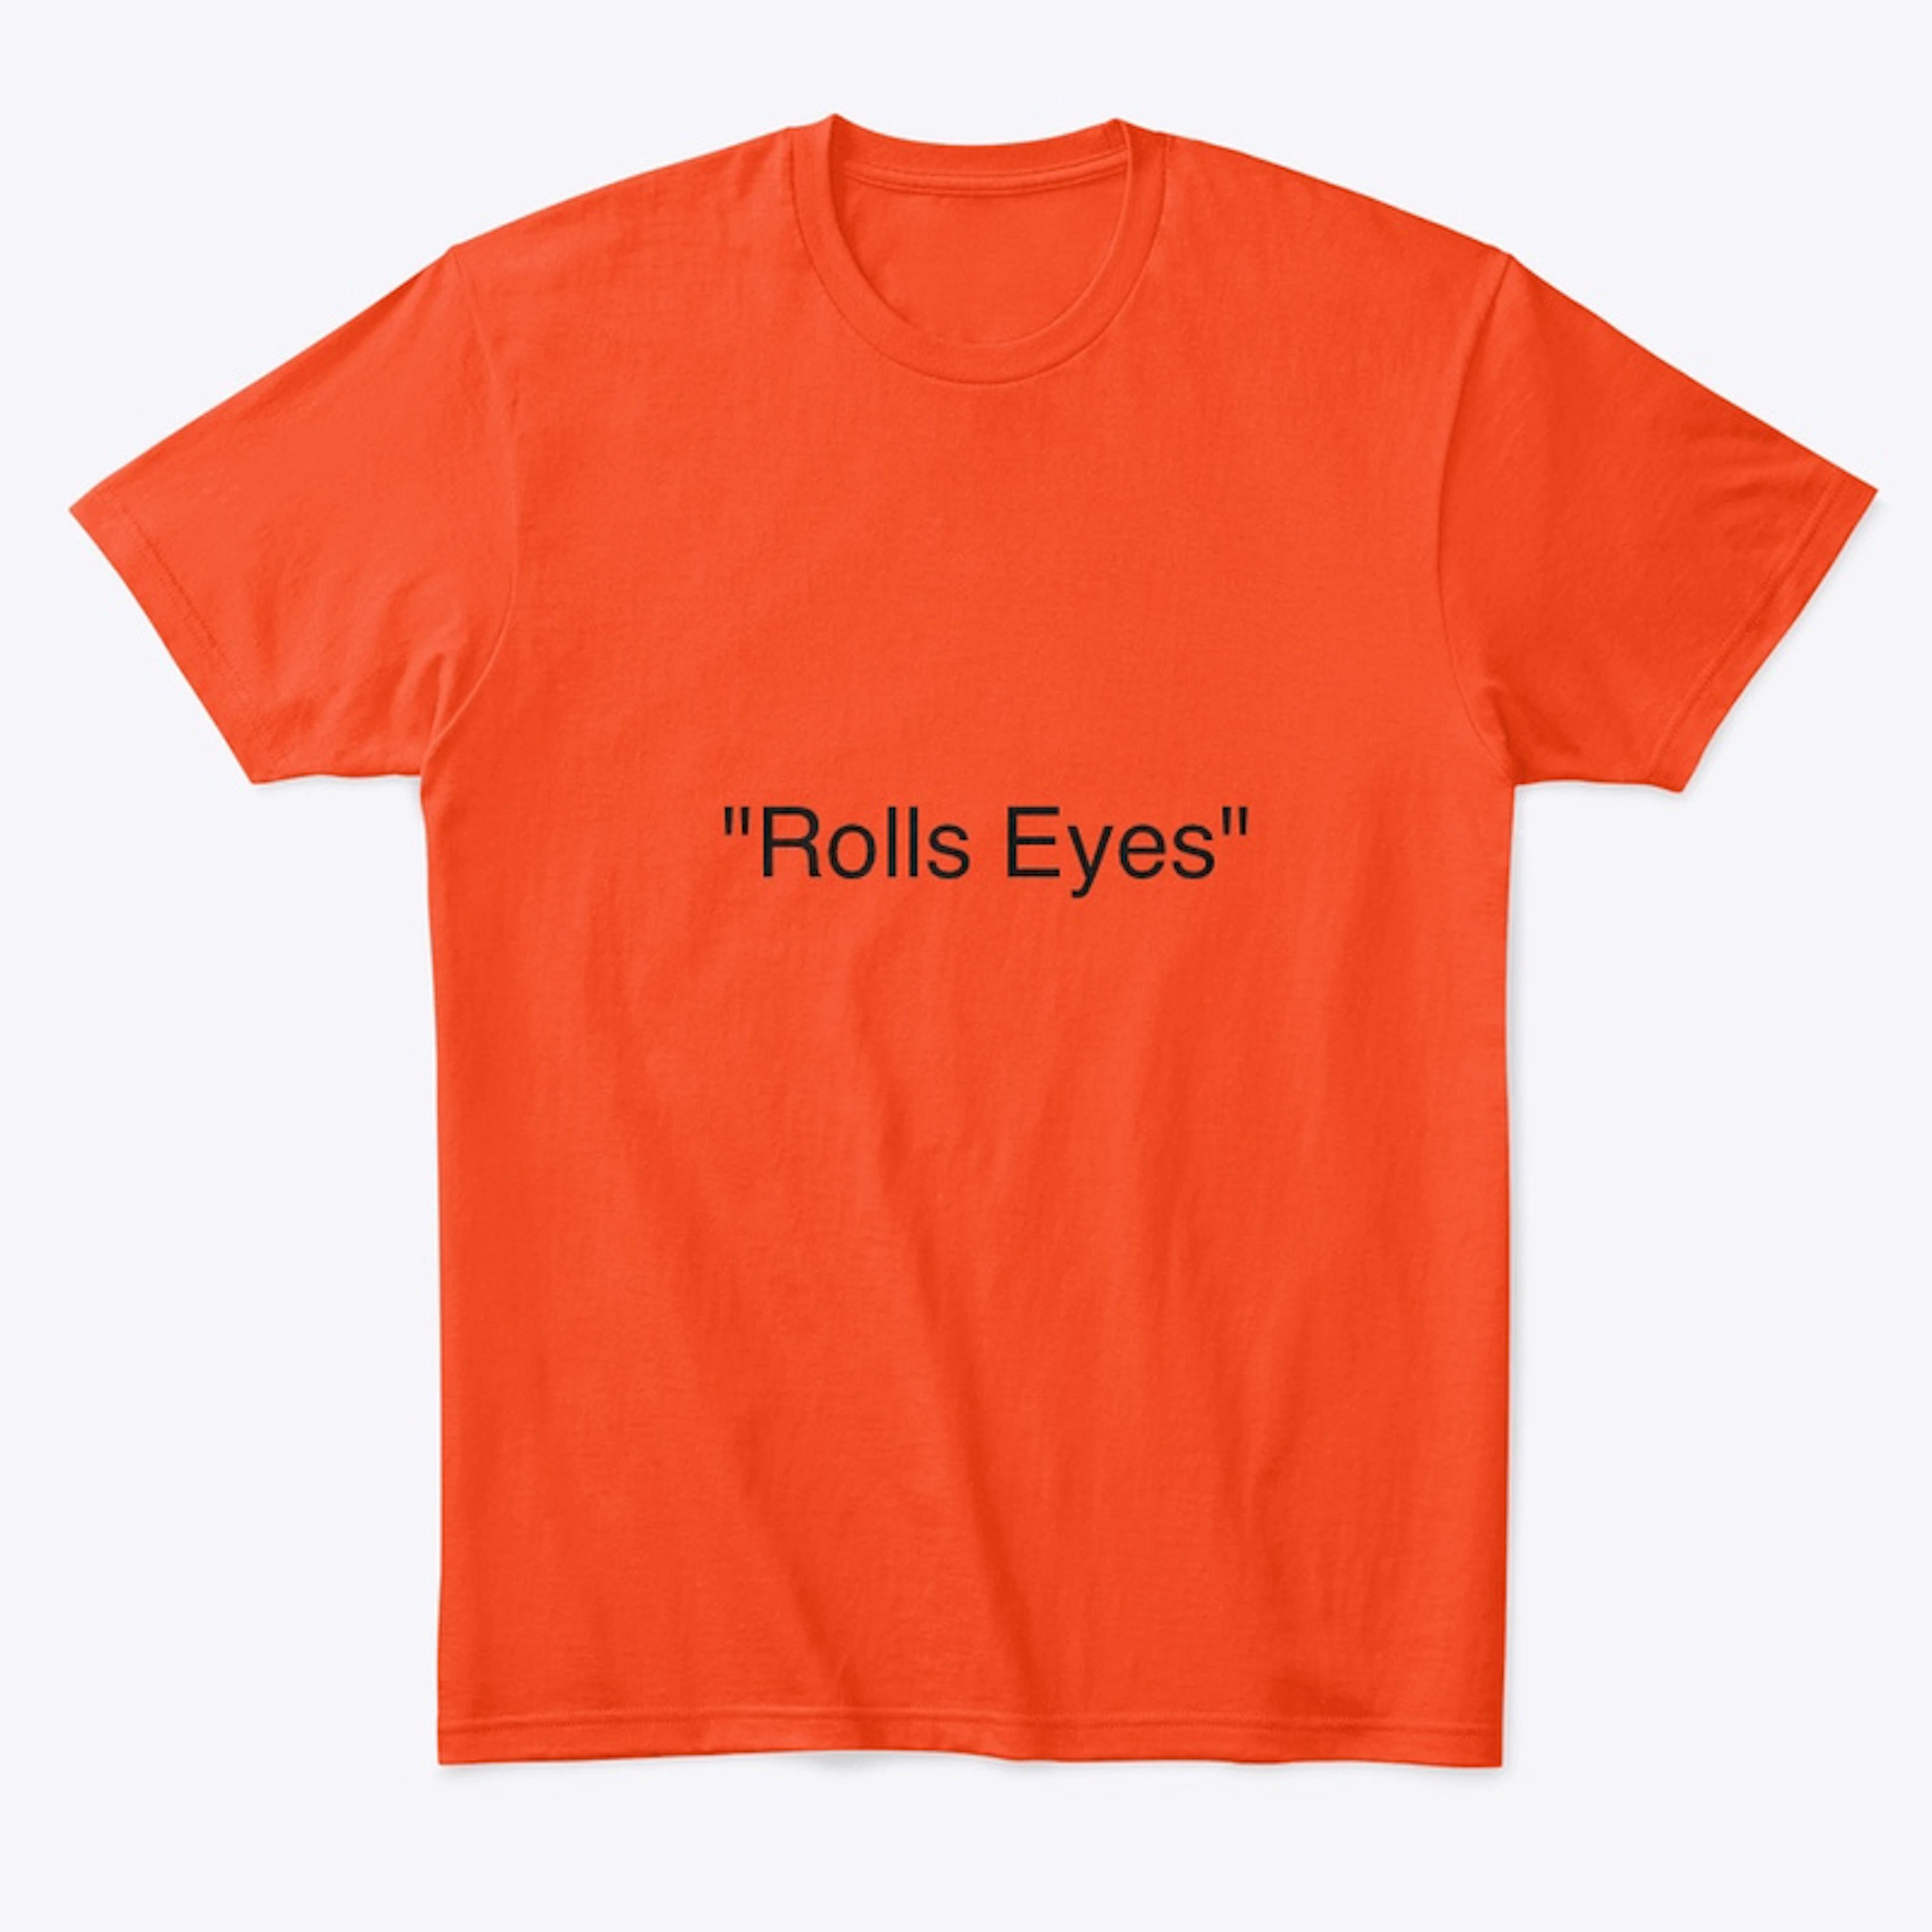 "Rolls Eyes" Unisex apparel